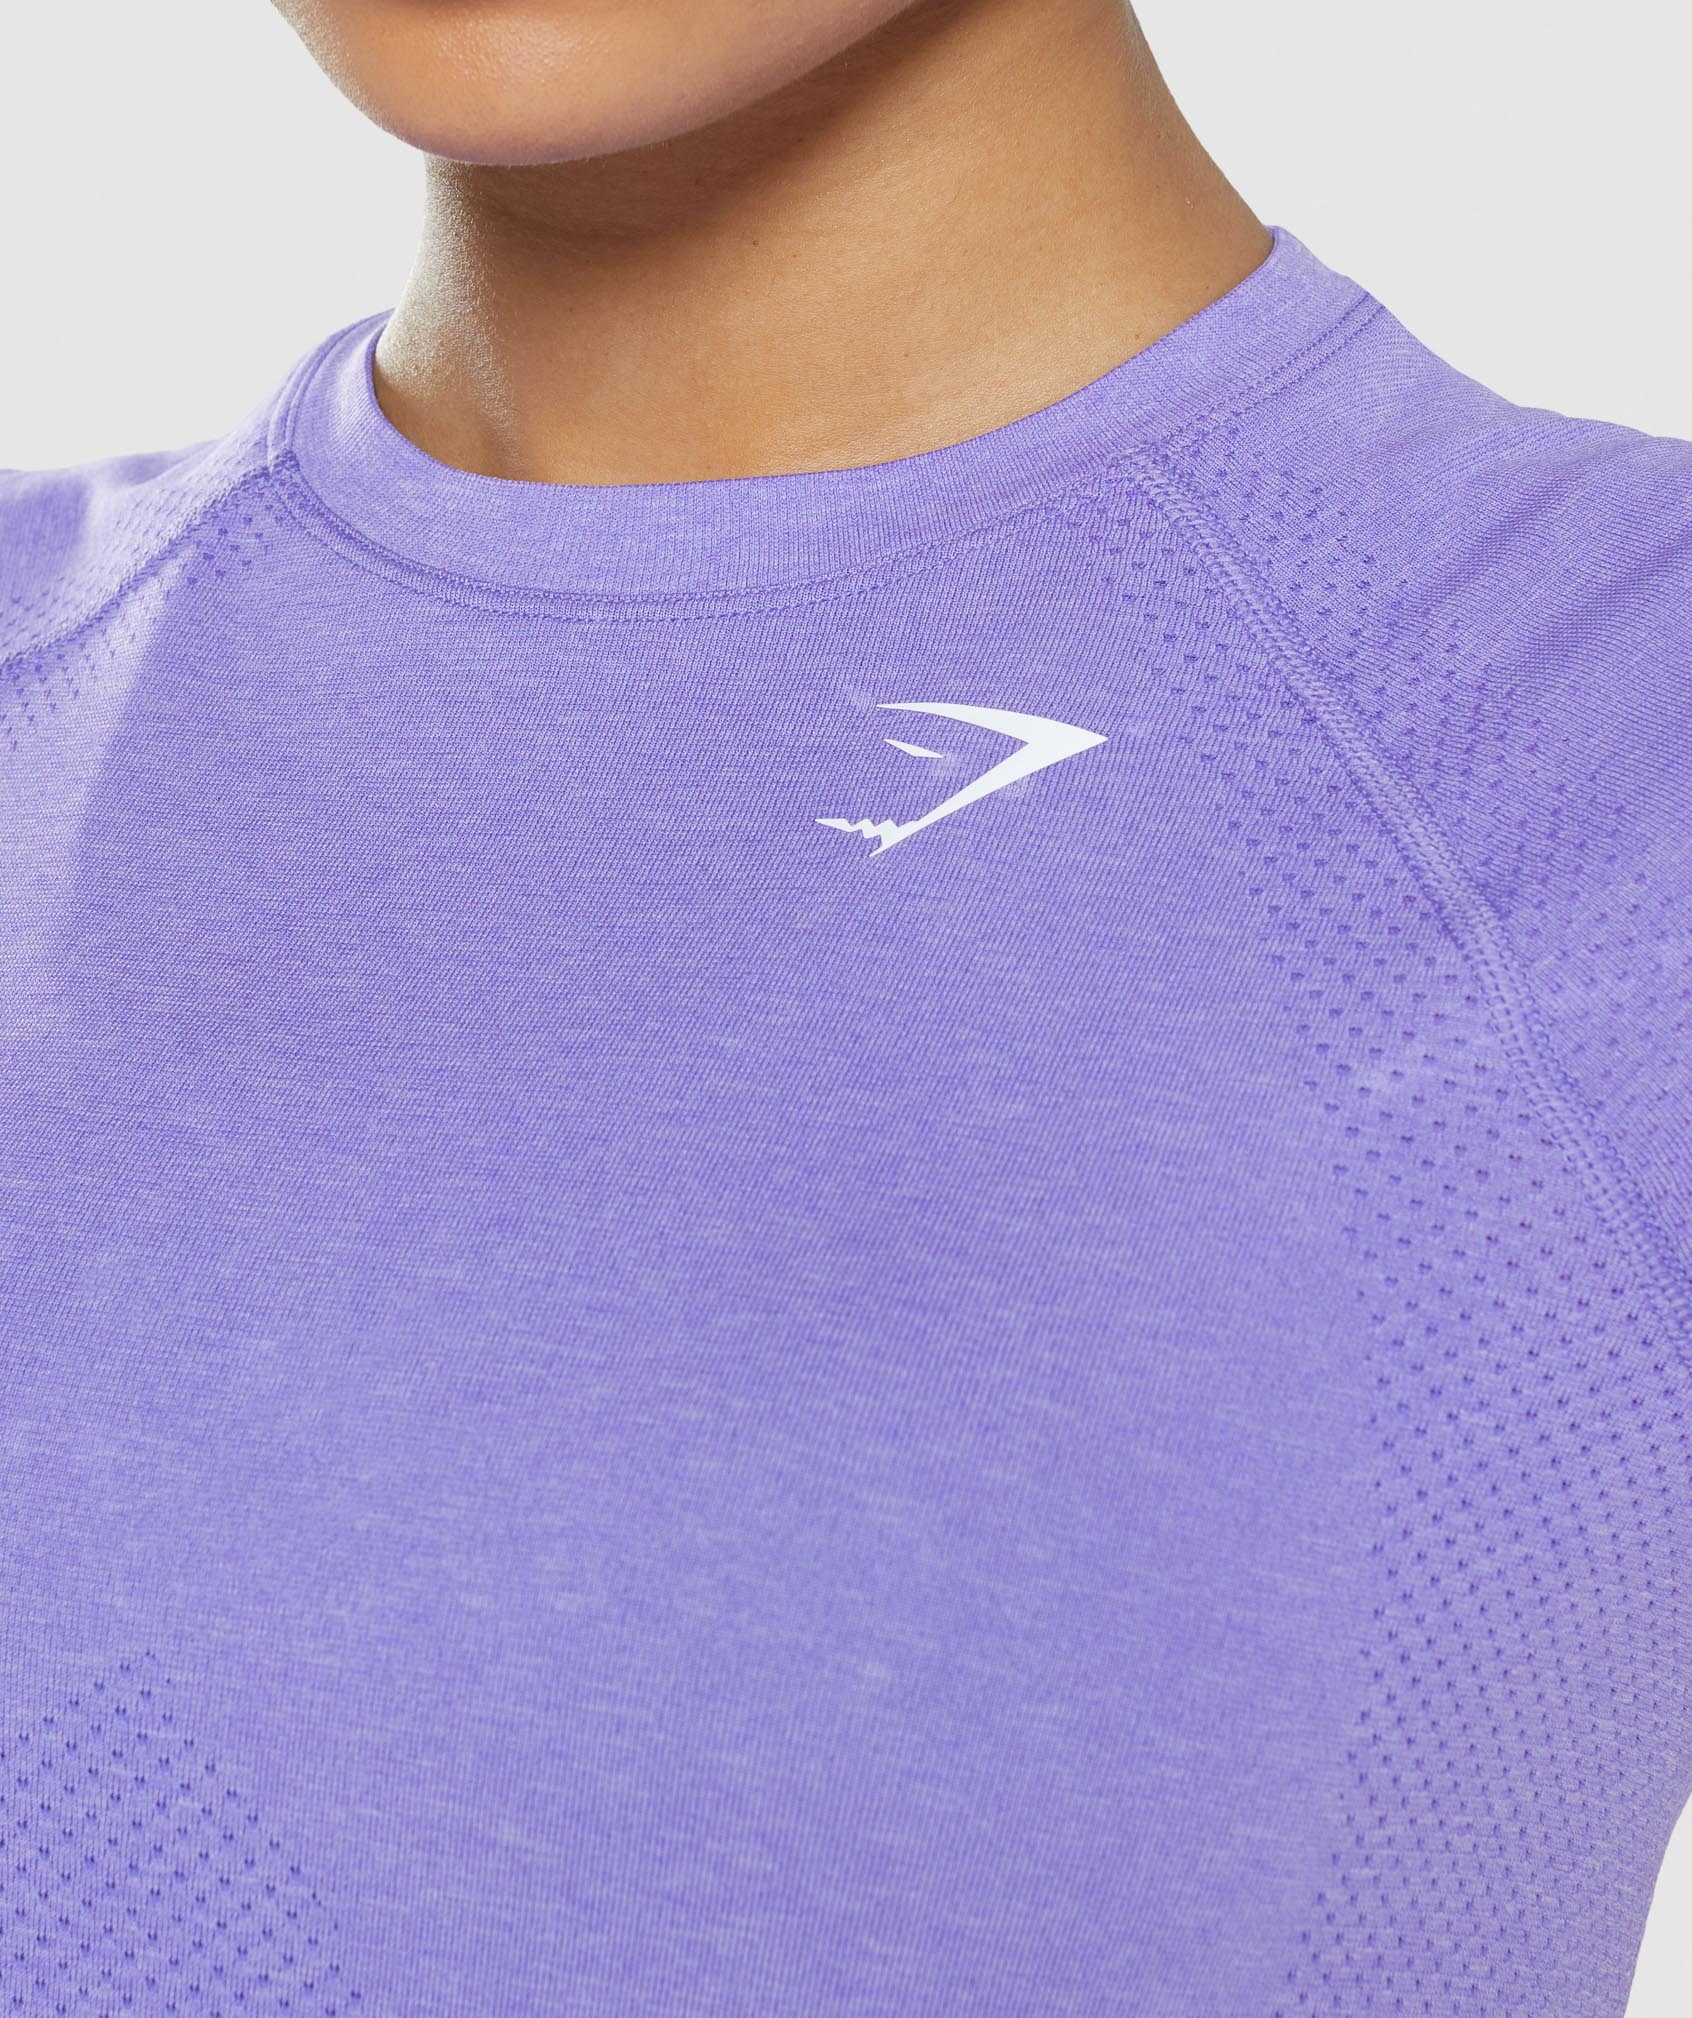 Vital Seamless 2.0 Light T-Shirt in Bright Purple Marl - view 5